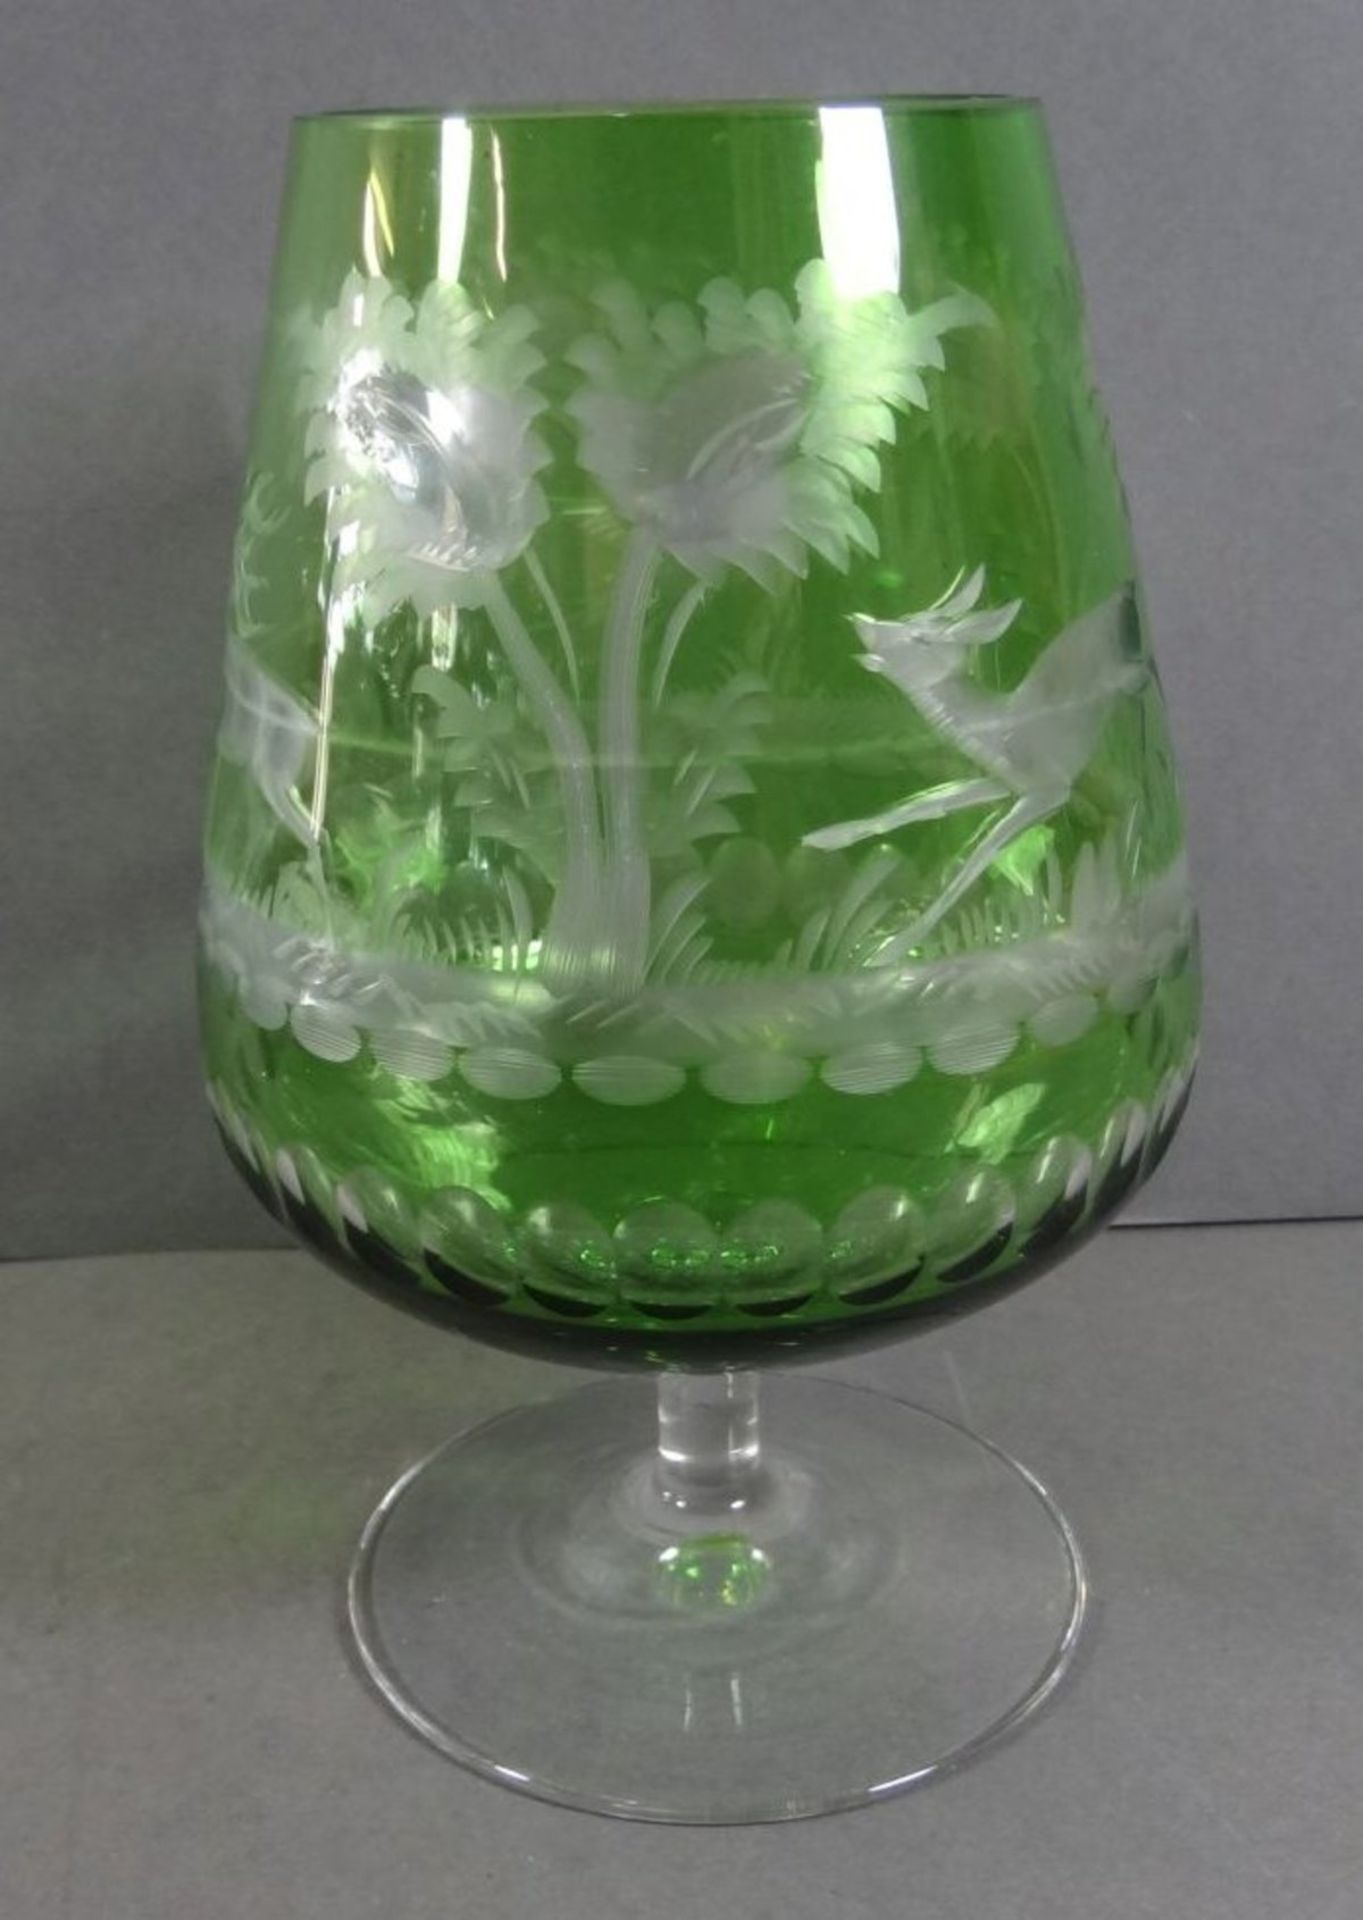 übergrosser Cognac-SDchwenker, grün-klar mit Wild-Motiven, H-18 cm - Bild 2 aus 6